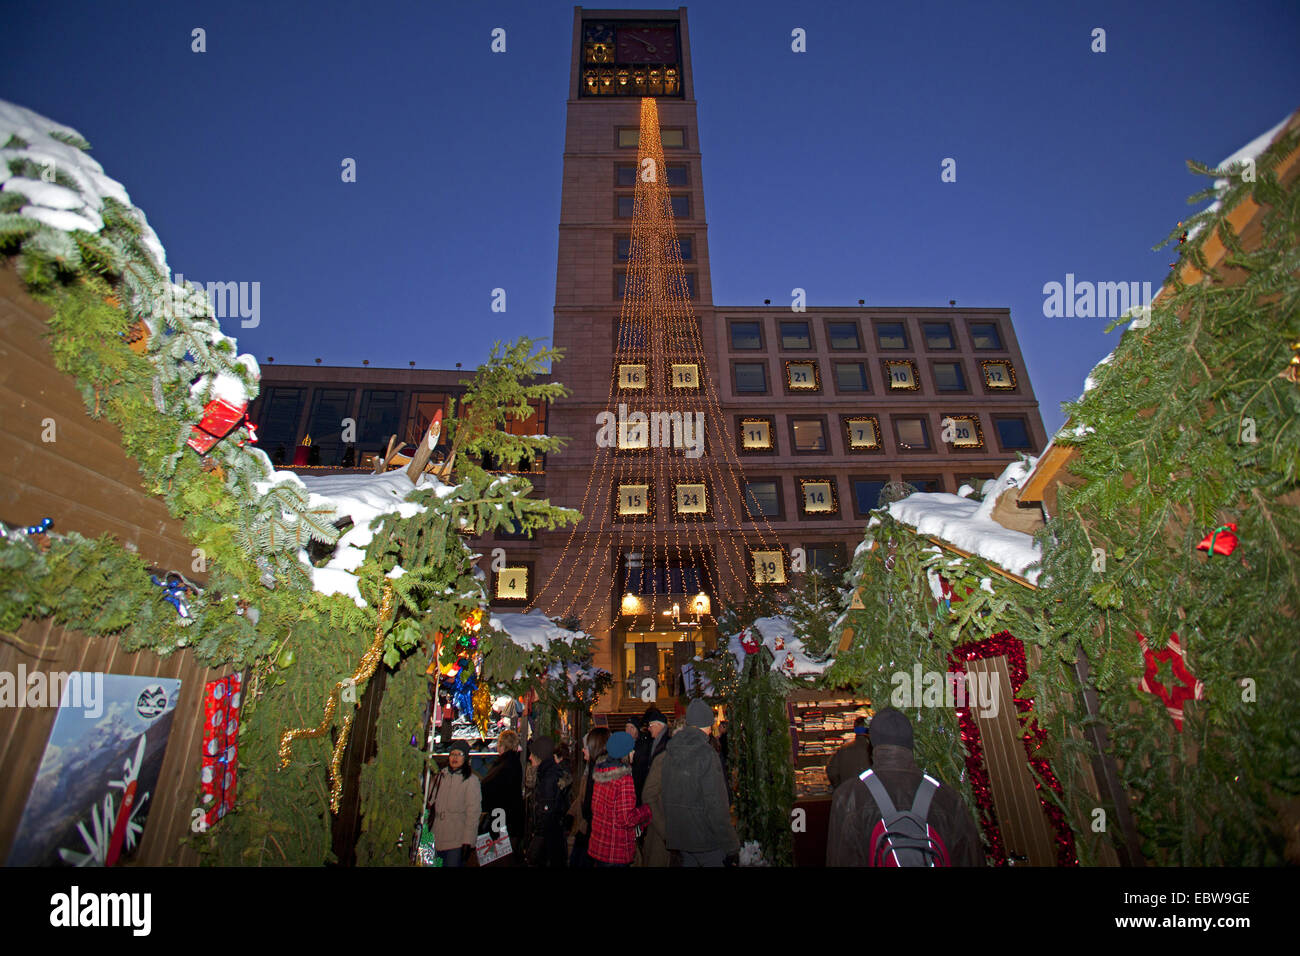 Christmas fair in the evening, Germany, Baden-Wuerttemberg, Stuttgart Stock Photo